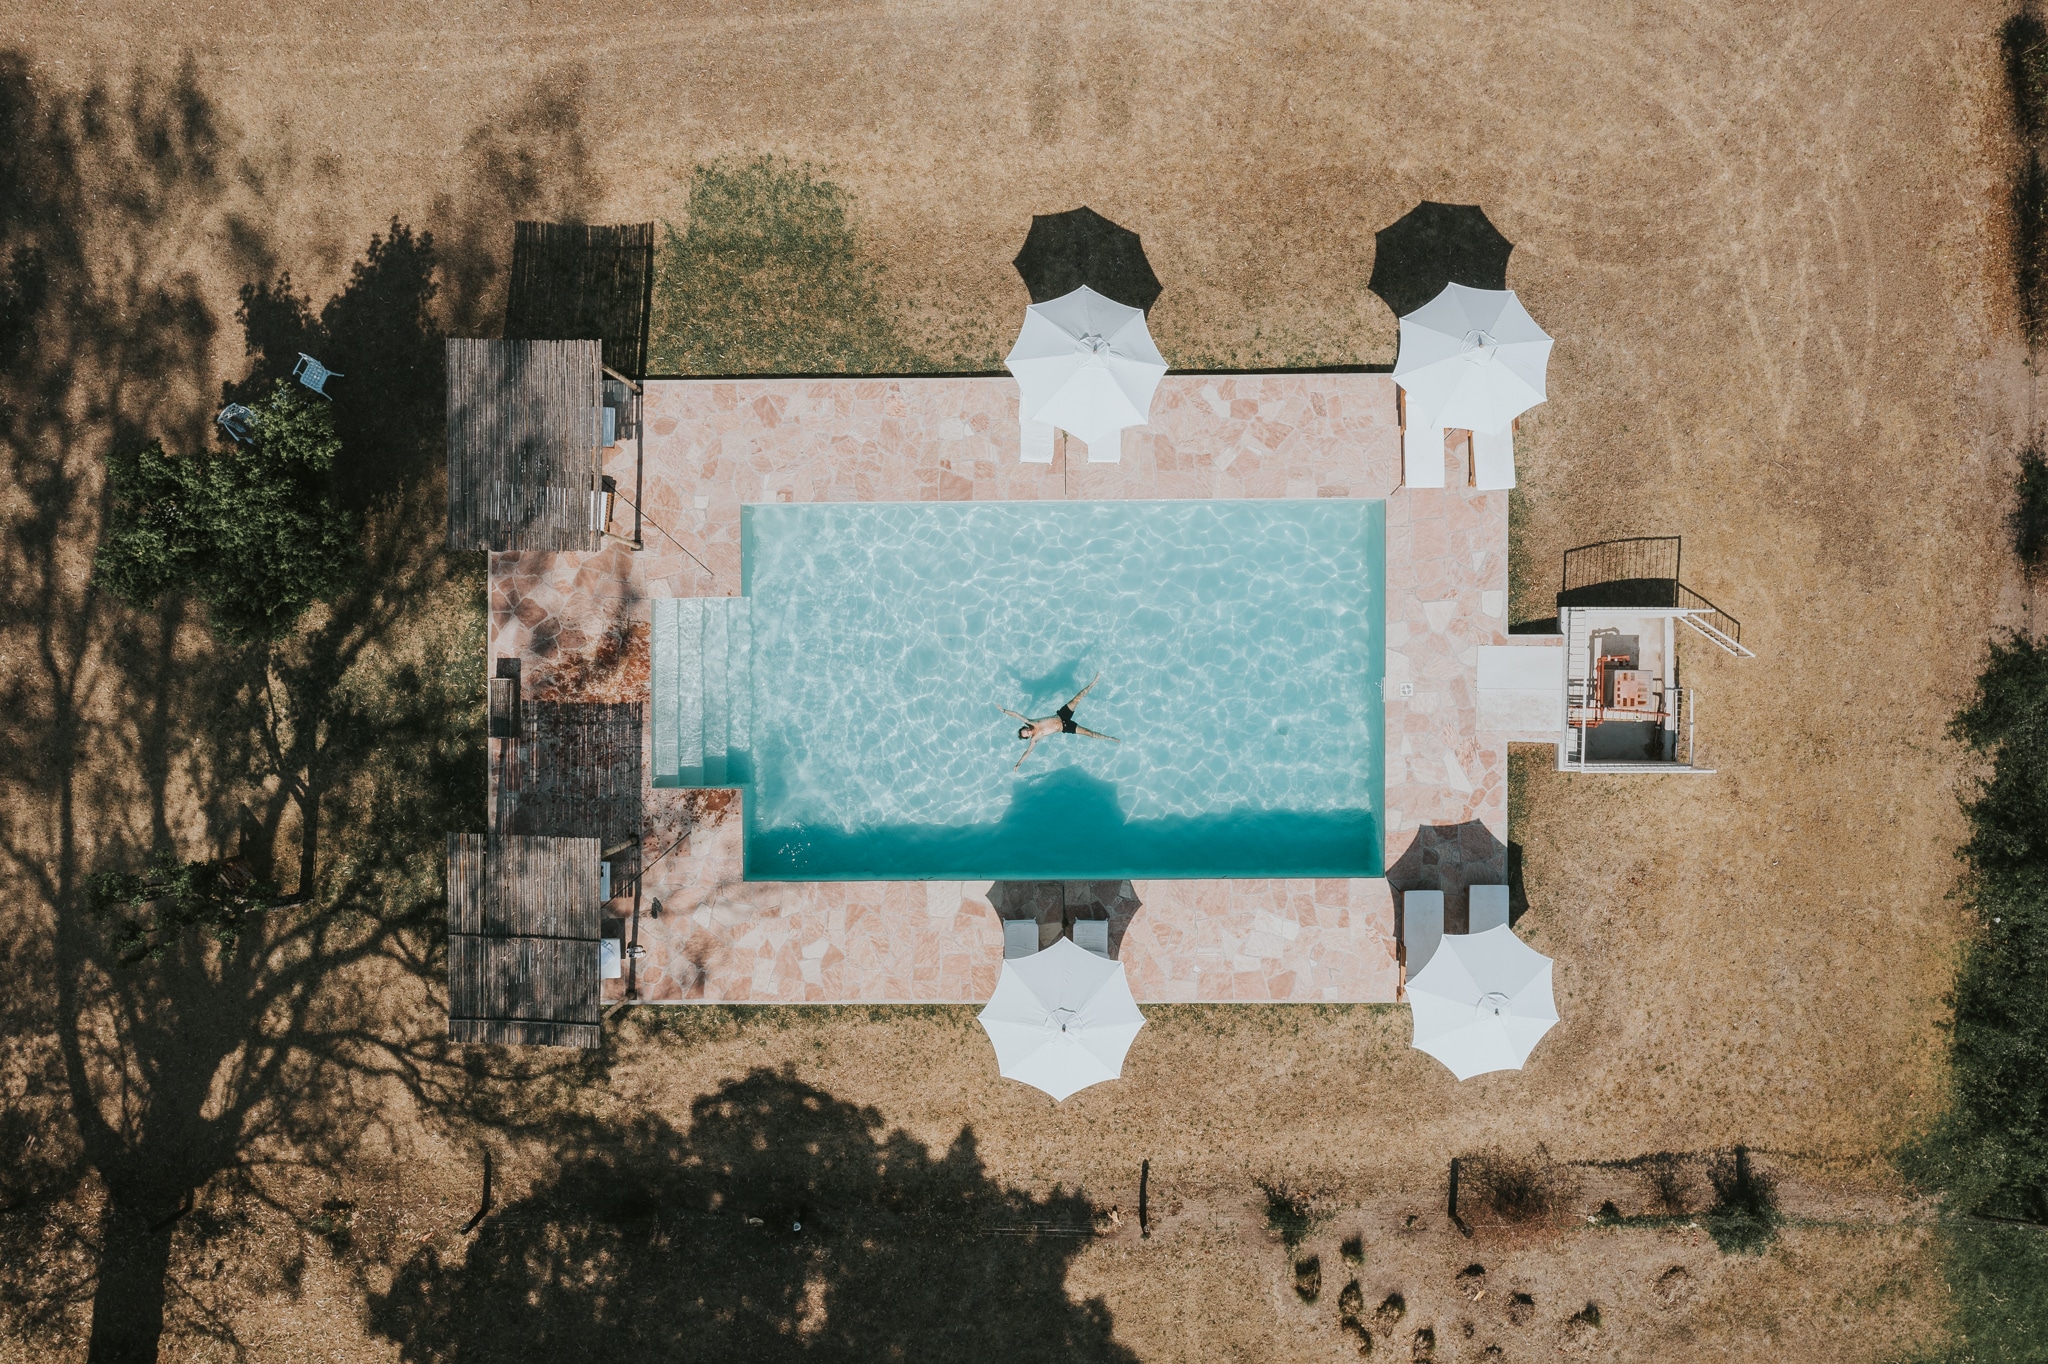 House of jasmines Argentine piscine